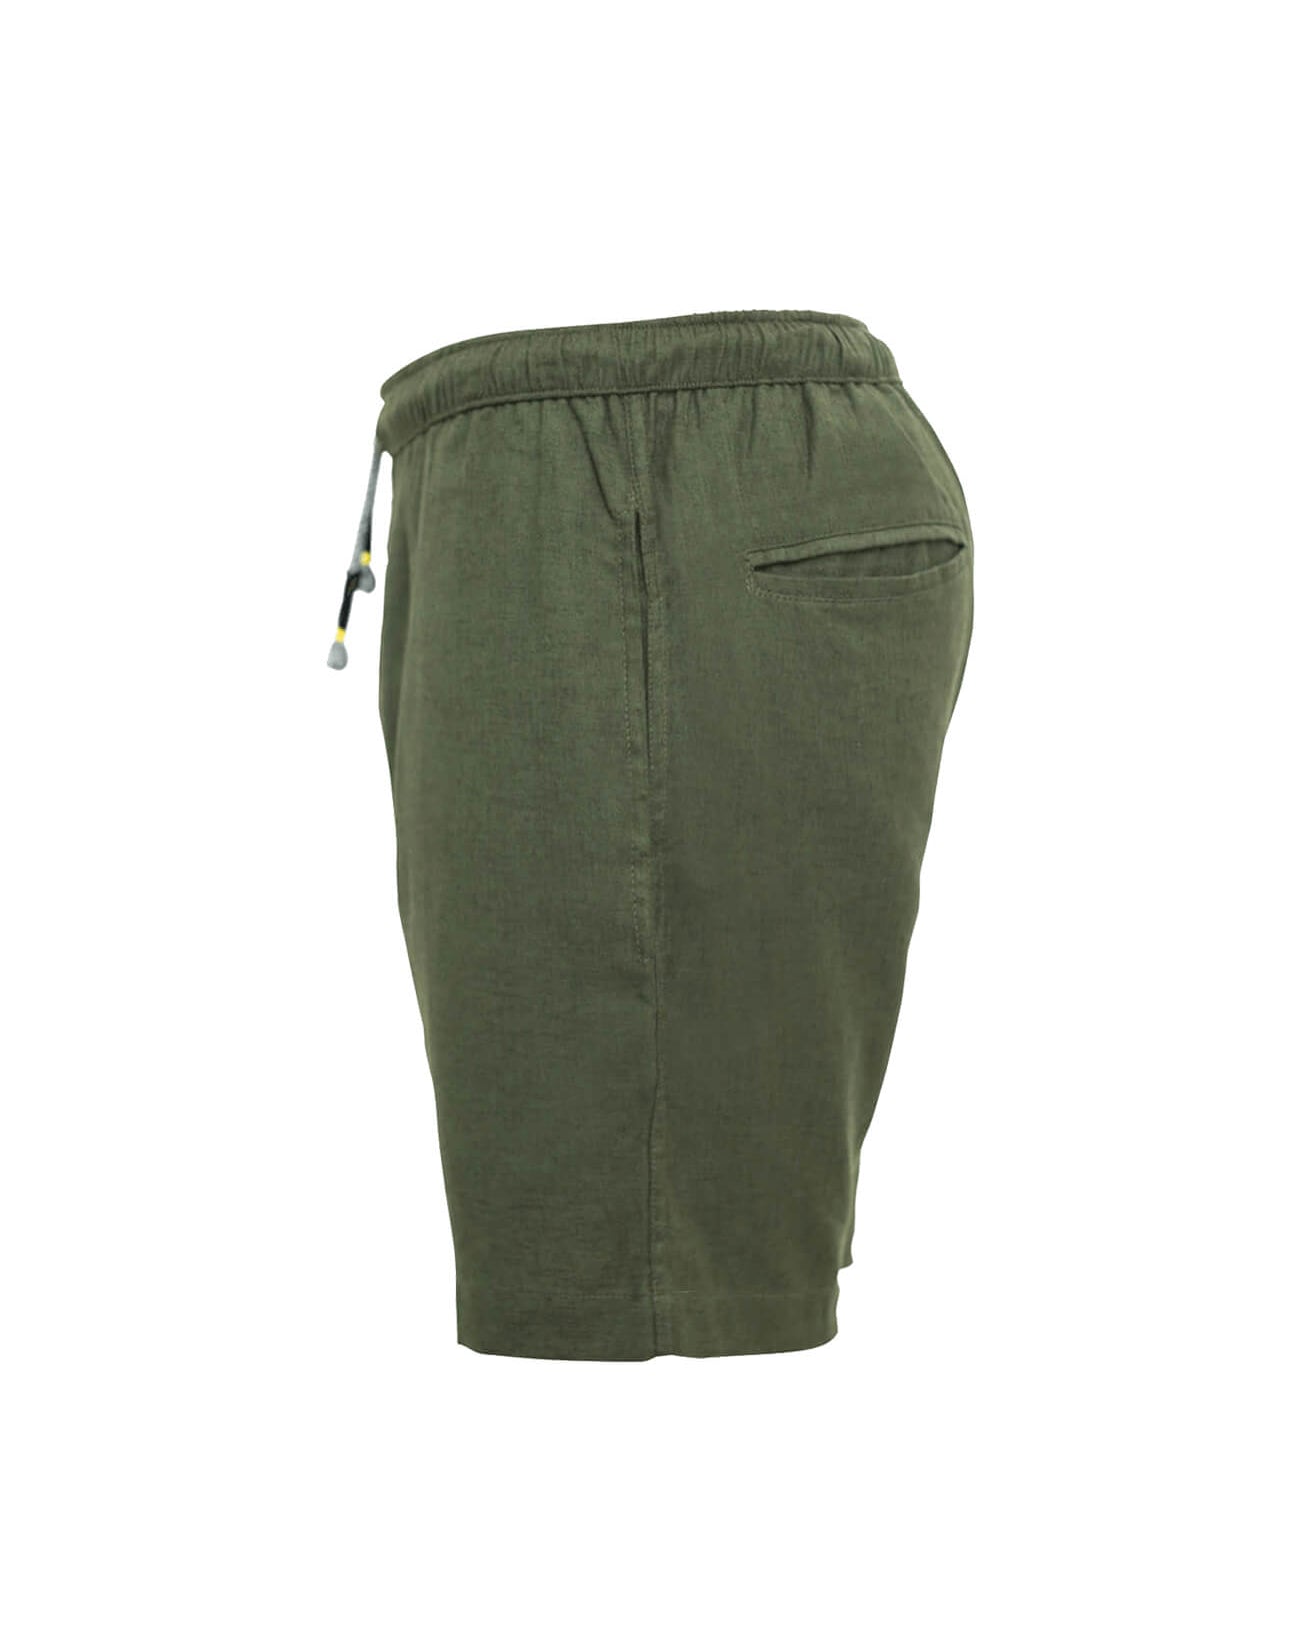 TODOS SANTOS  Linen Shorts - Green - CRASQI